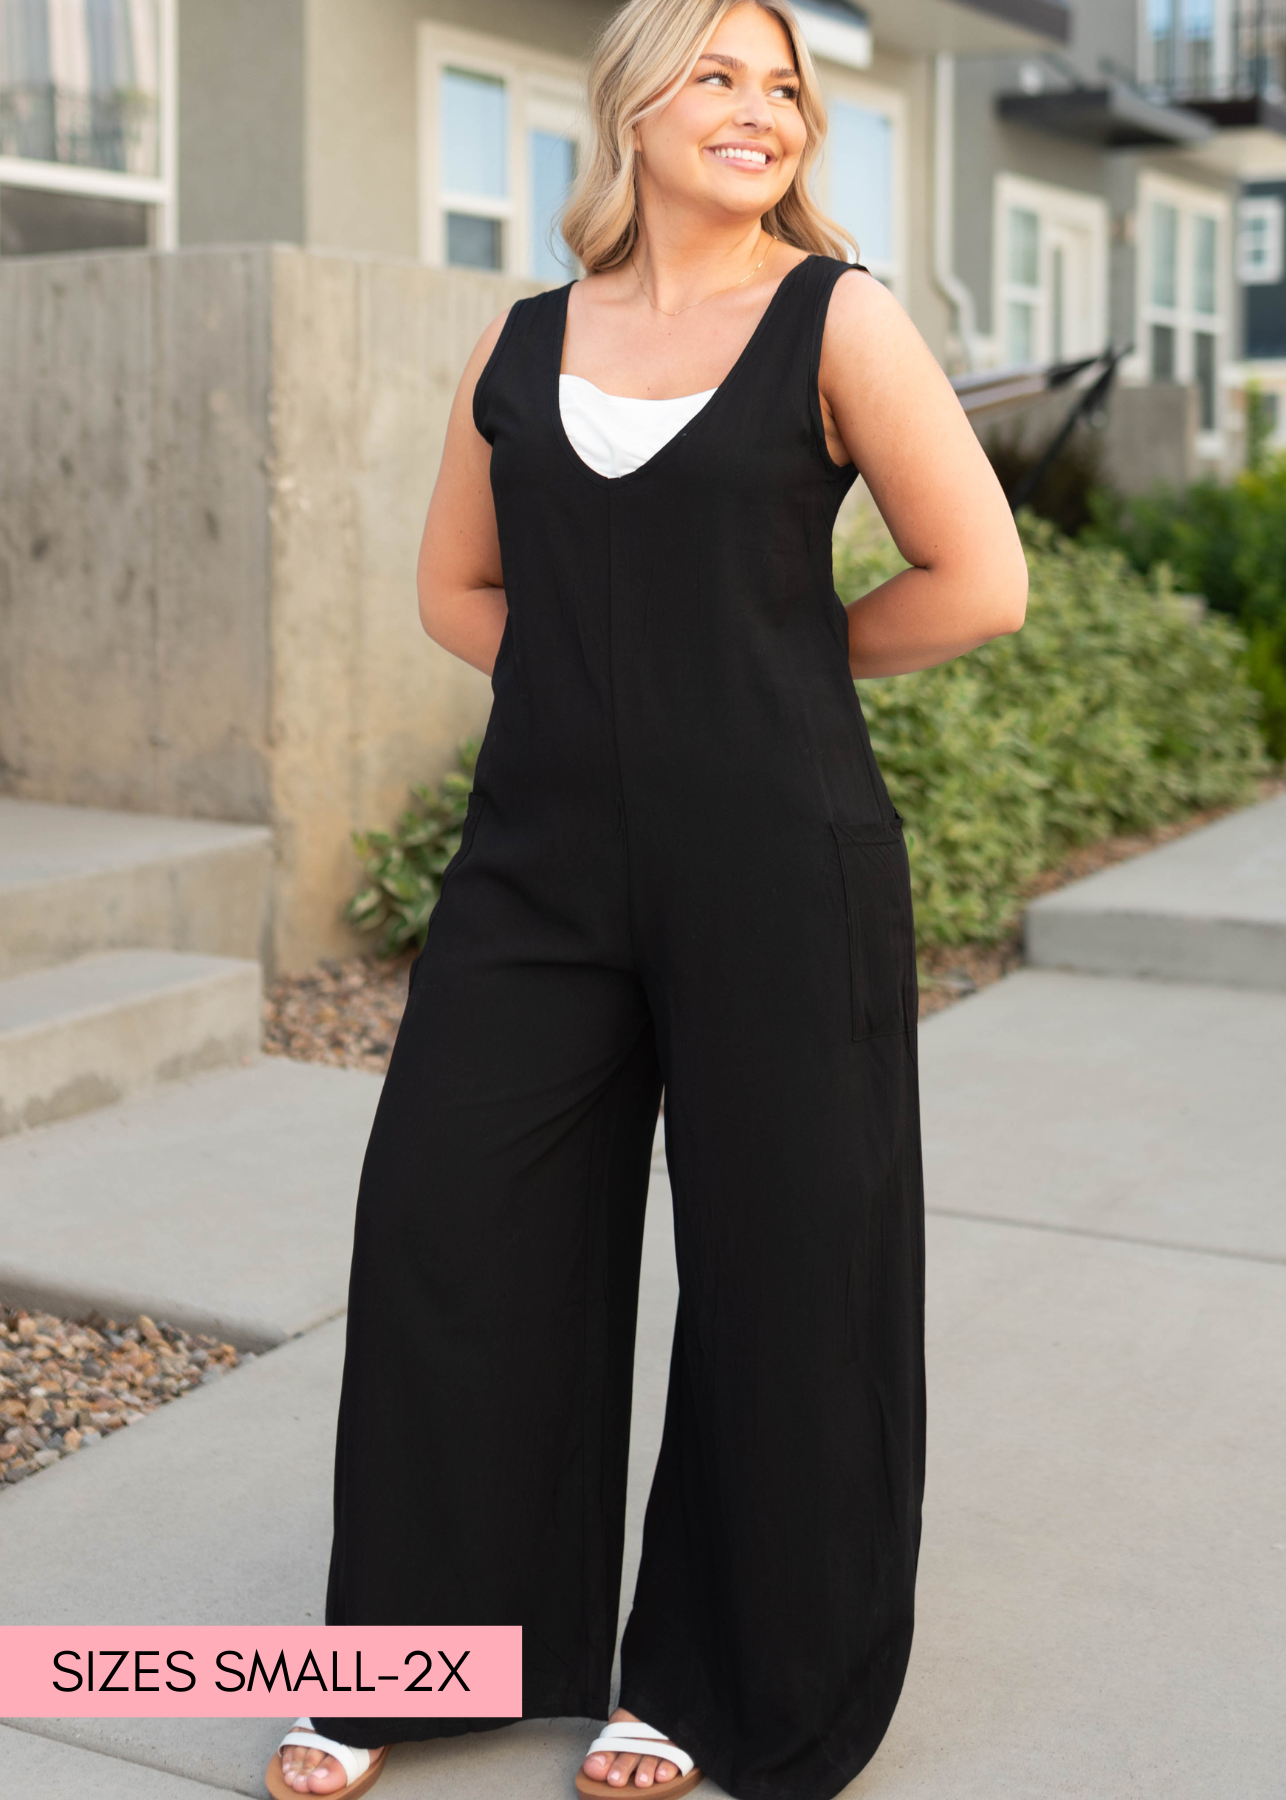 V-neck black jumpsuit with pockets